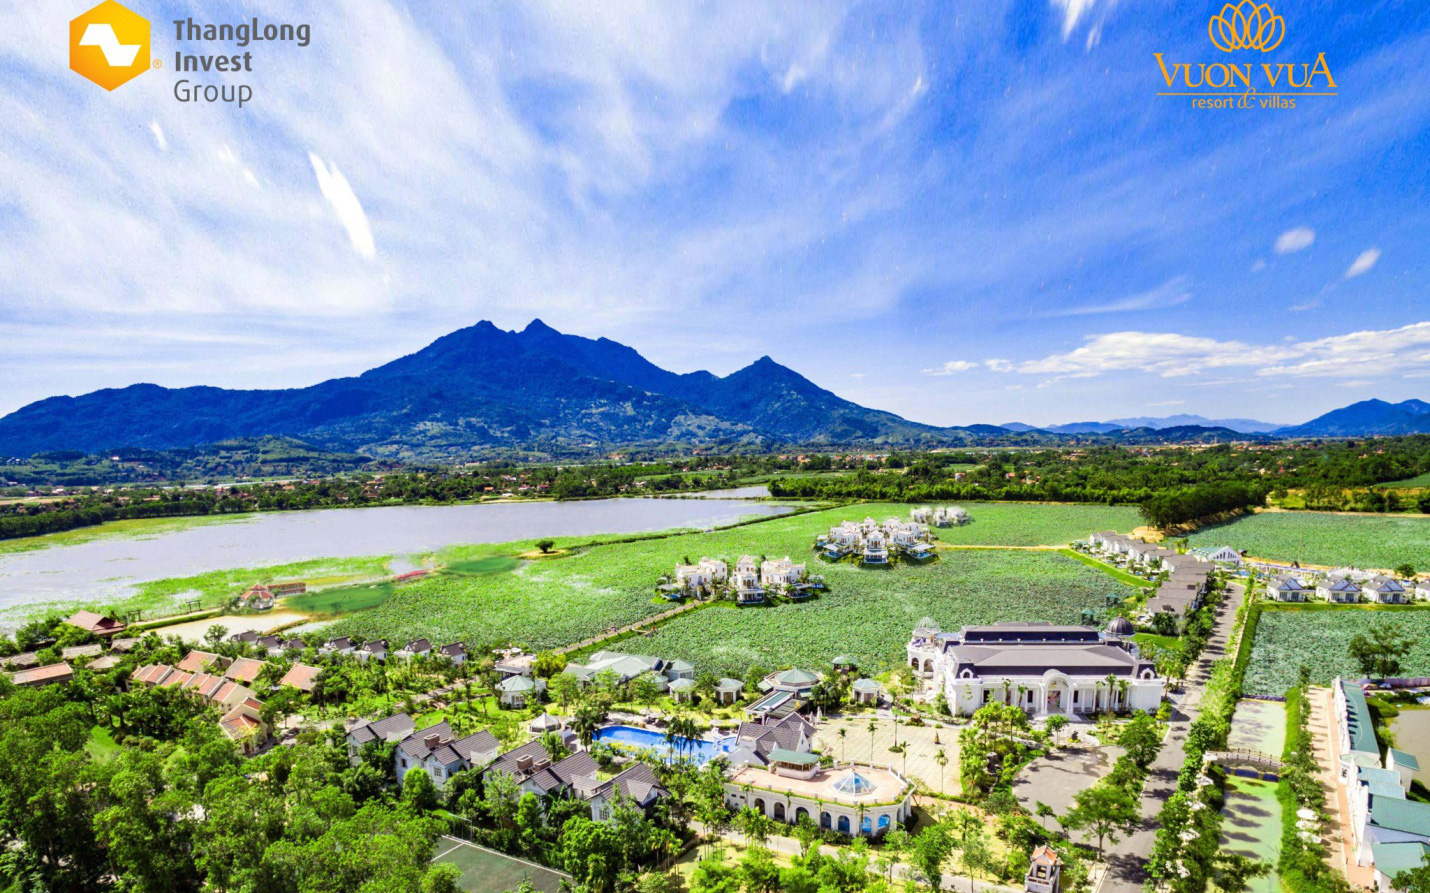 3 yếu tố chính khiến Vườn Vua Resort & Villas trở thành cơ hội đầu tư sáng giá mang lại lợi ích kép